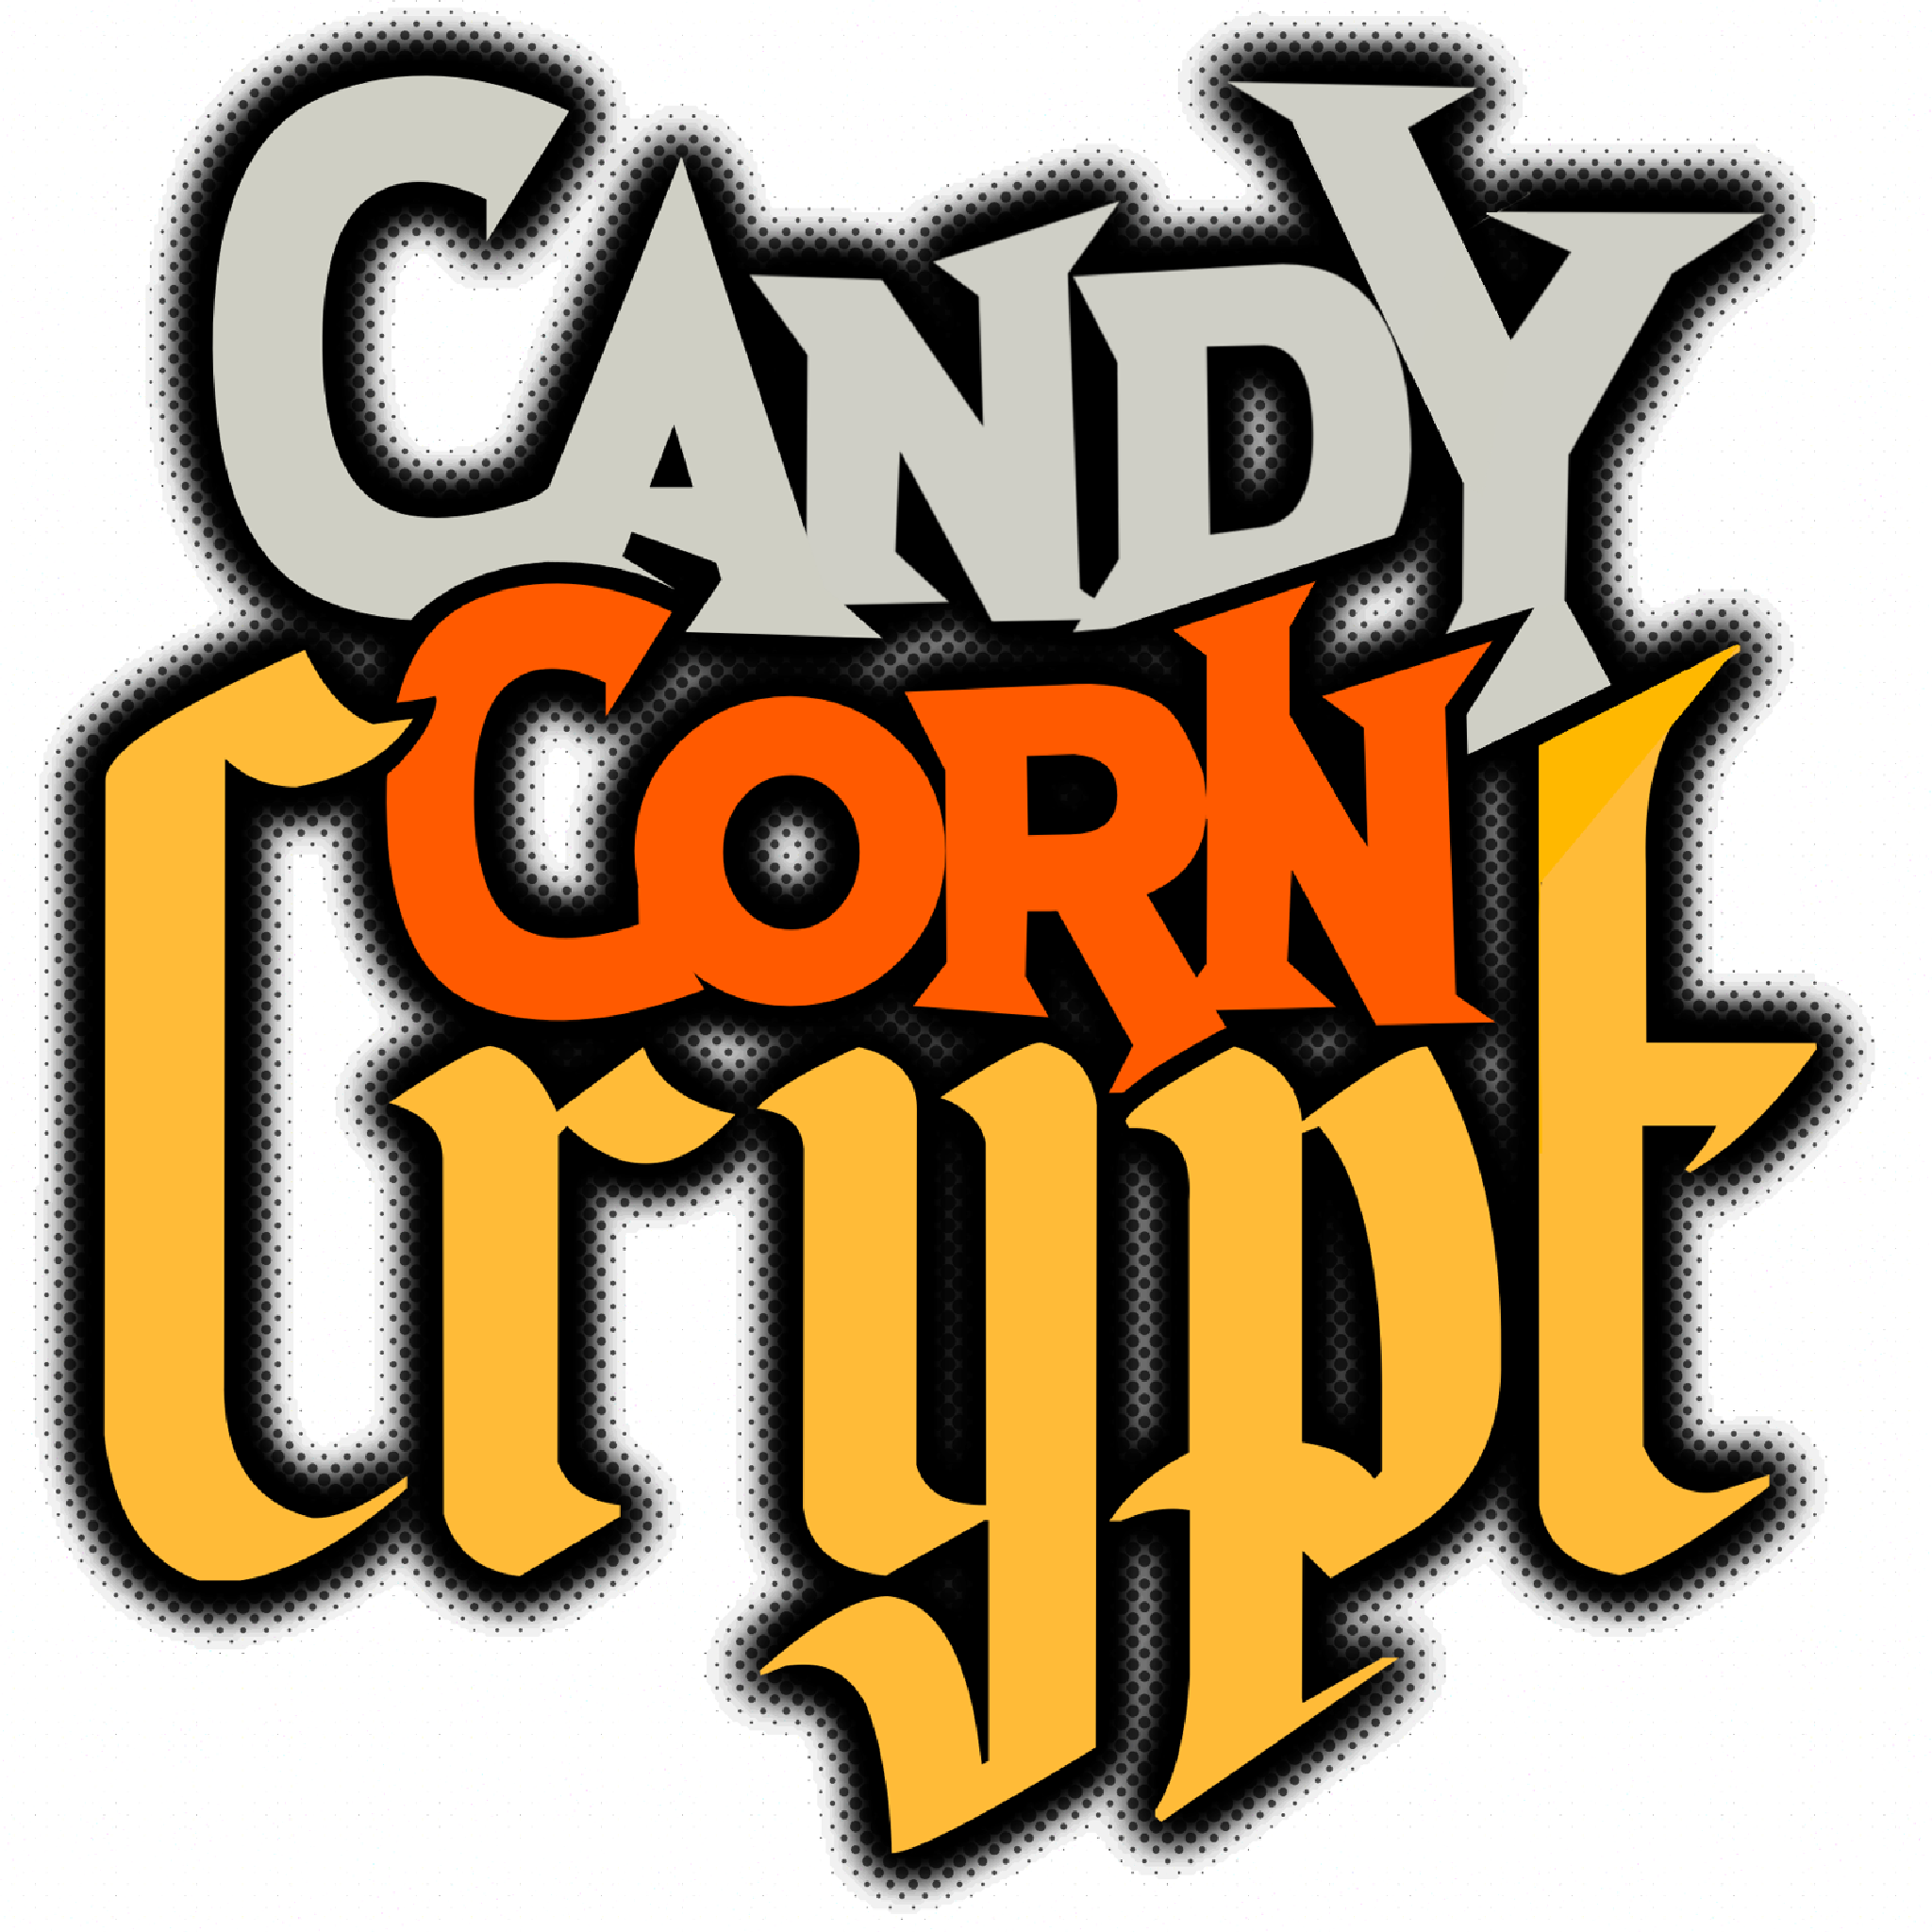 www.candycorncrypt.com